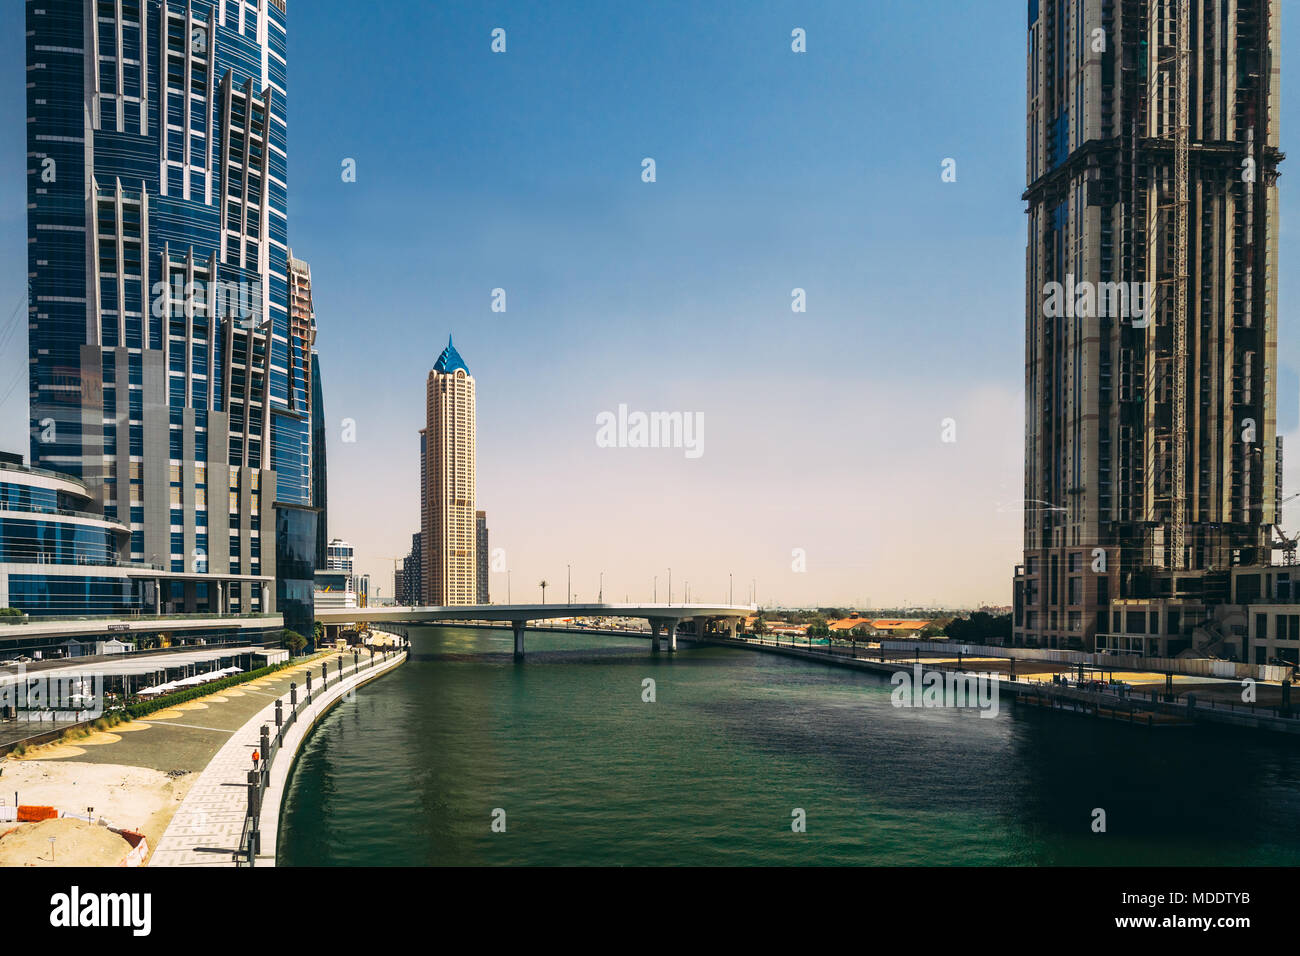 Architettura iconica nella città di Dubai, Emirates Foto Stock